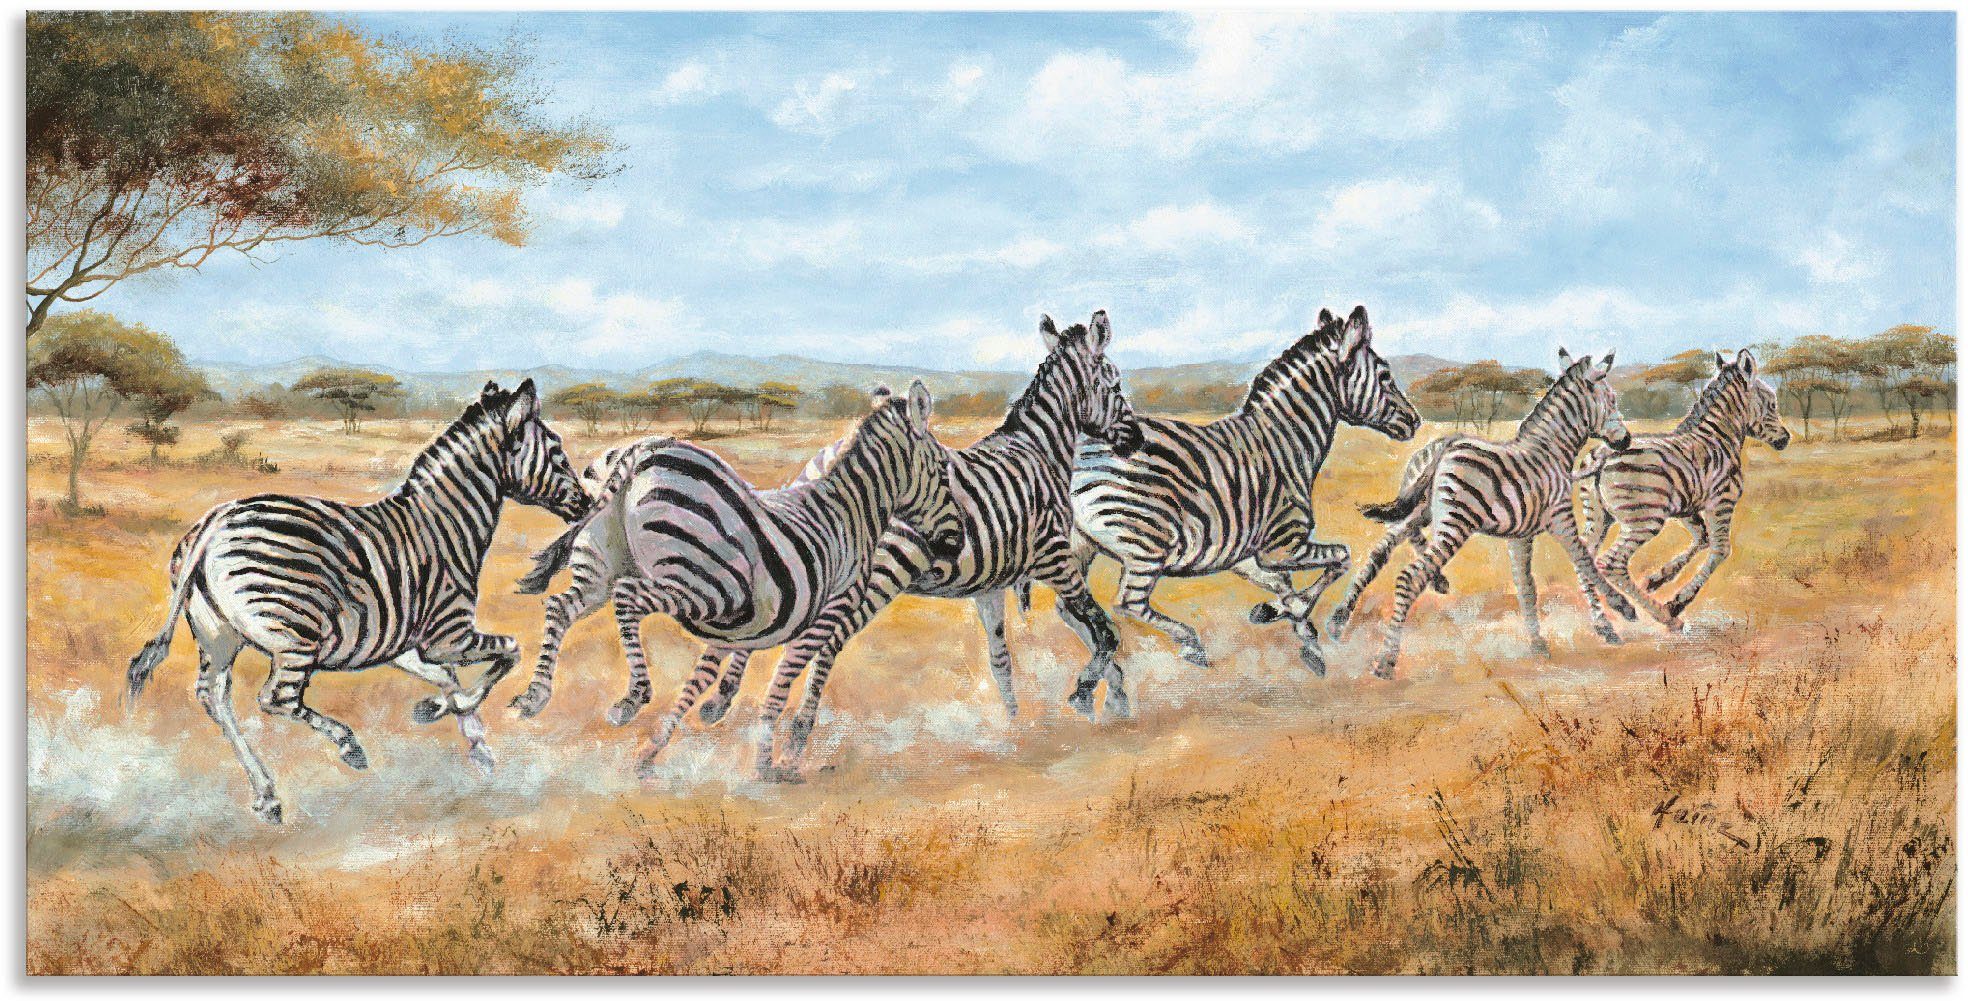 Artland Artprint Lopende zebra’s in vele afmetingen & productsoorten - artprint van aluminium / artprint voor buiten, artprint op linnen, poster, muursticker / wandfolie ook geschi